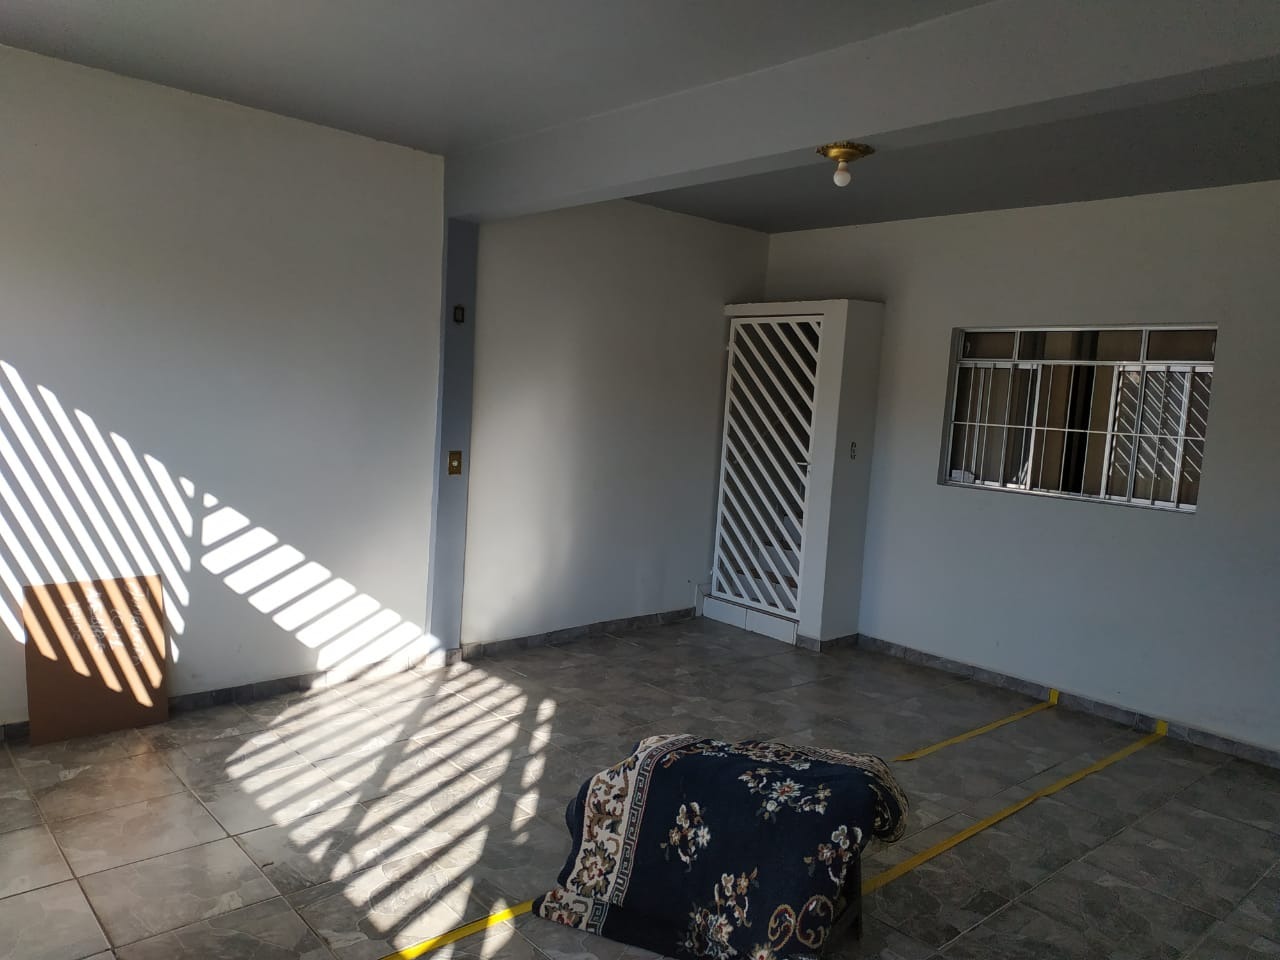 Casa para comprar, 4 quartos, 2 vagas, no bairro Residencial Doutor Jorge Coury em Rio das Pedras - SP